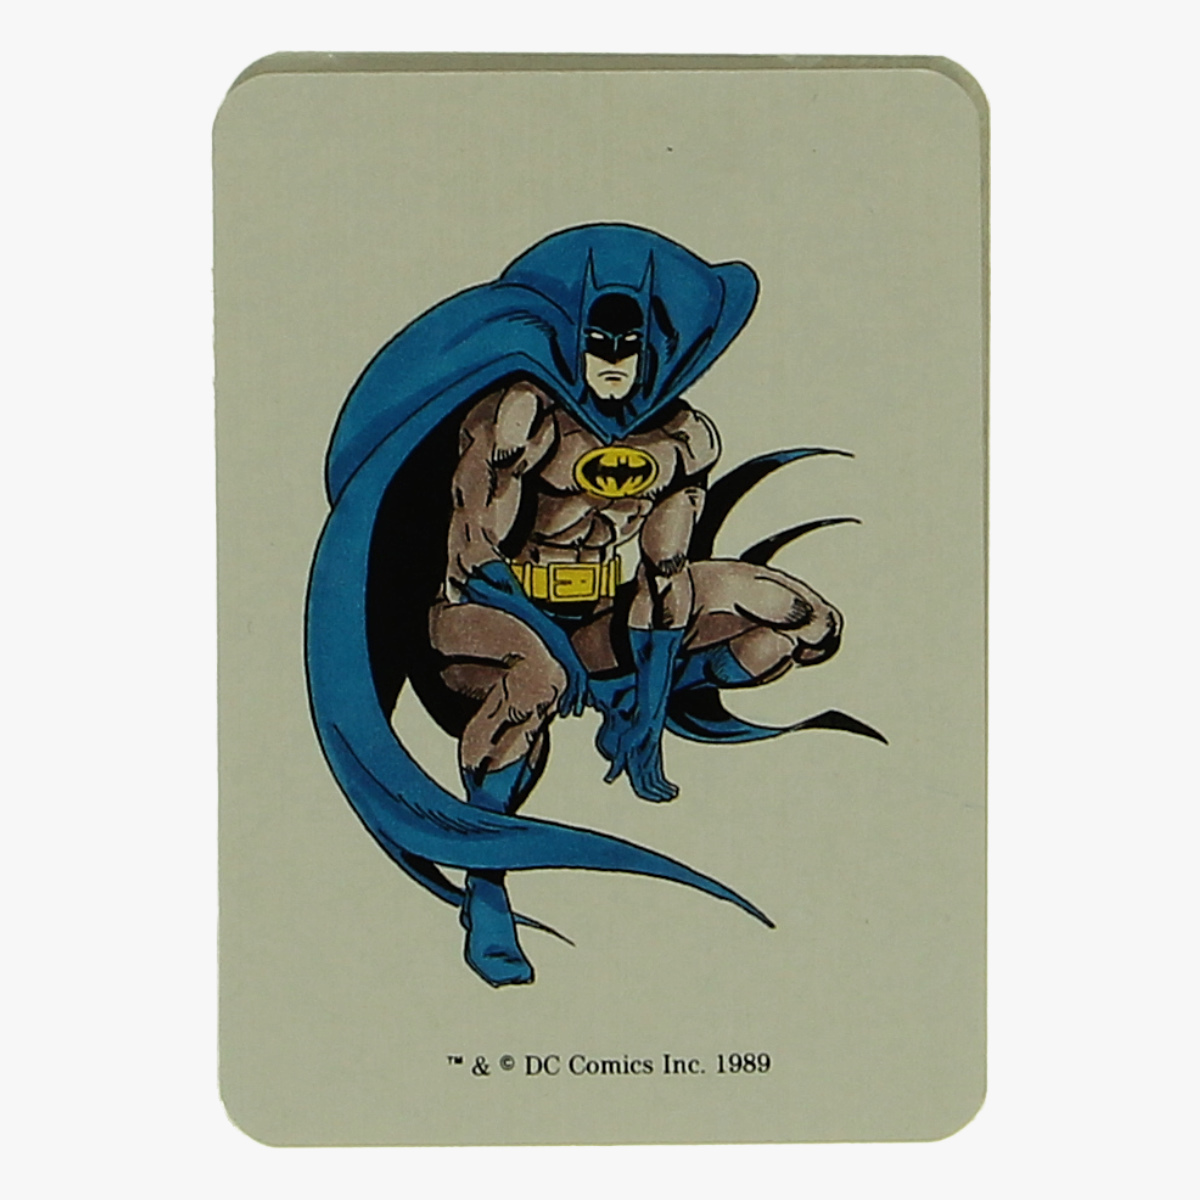 Afbeeldingen van kwartetspel batman 1989 